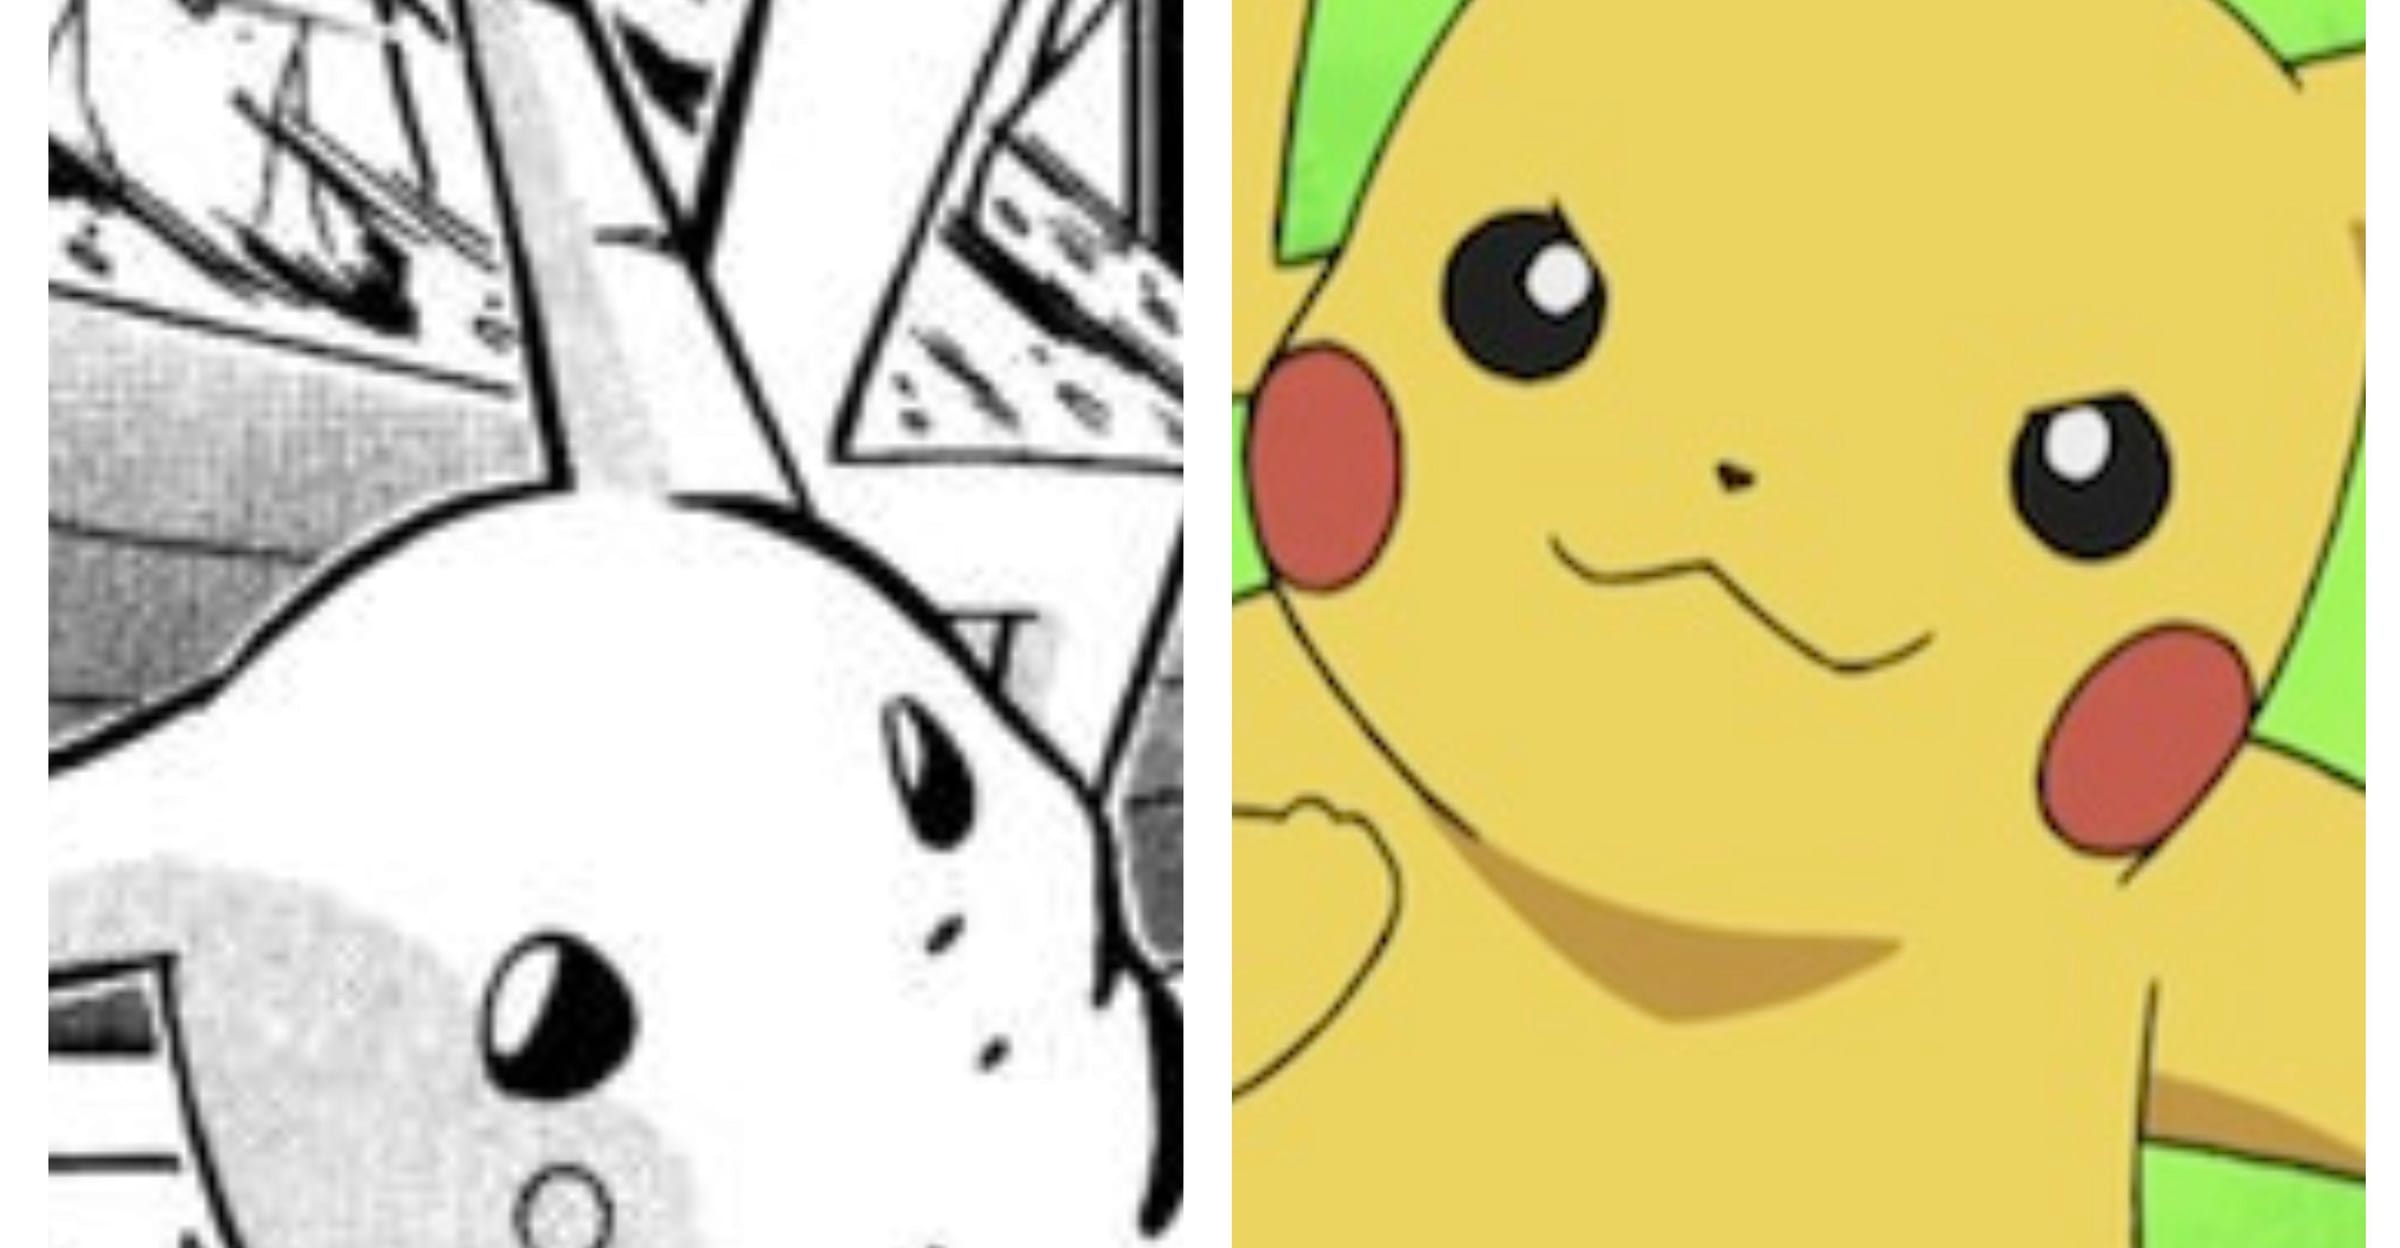 Pokémon - The Origin / Um Novo Anime ou OVA / A Saga de Red / Informações!!  